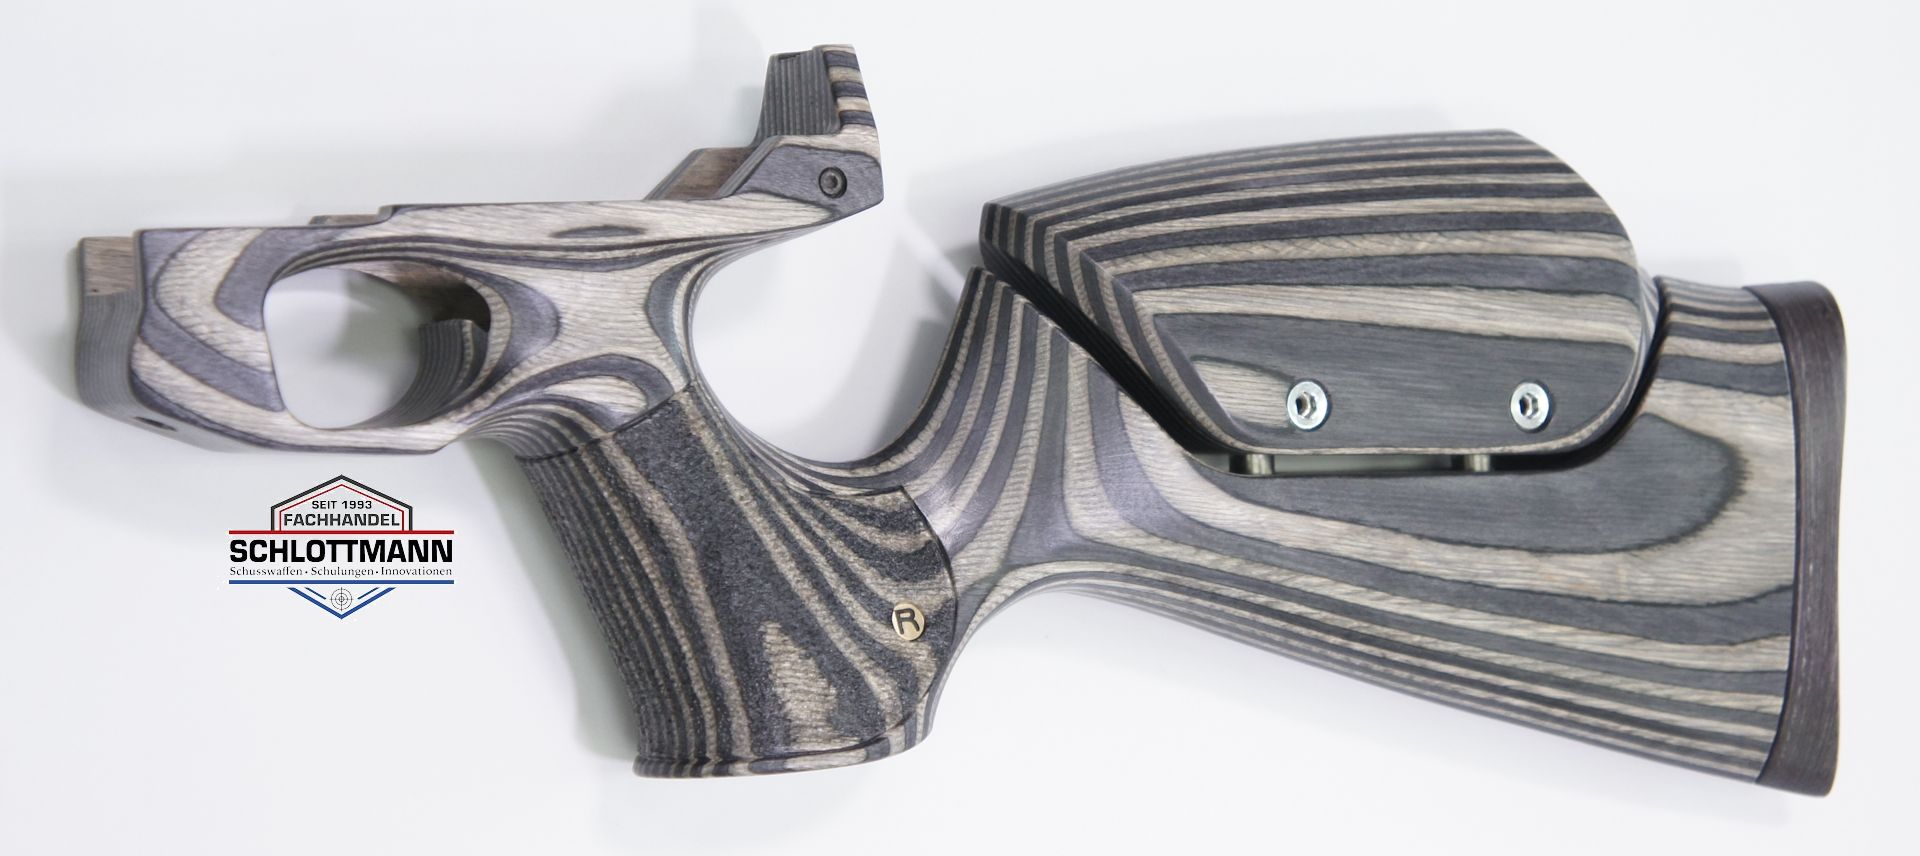 Anschlagschaft für Luftpistole HW 44 aus  schwarz-grauem Schichtholz